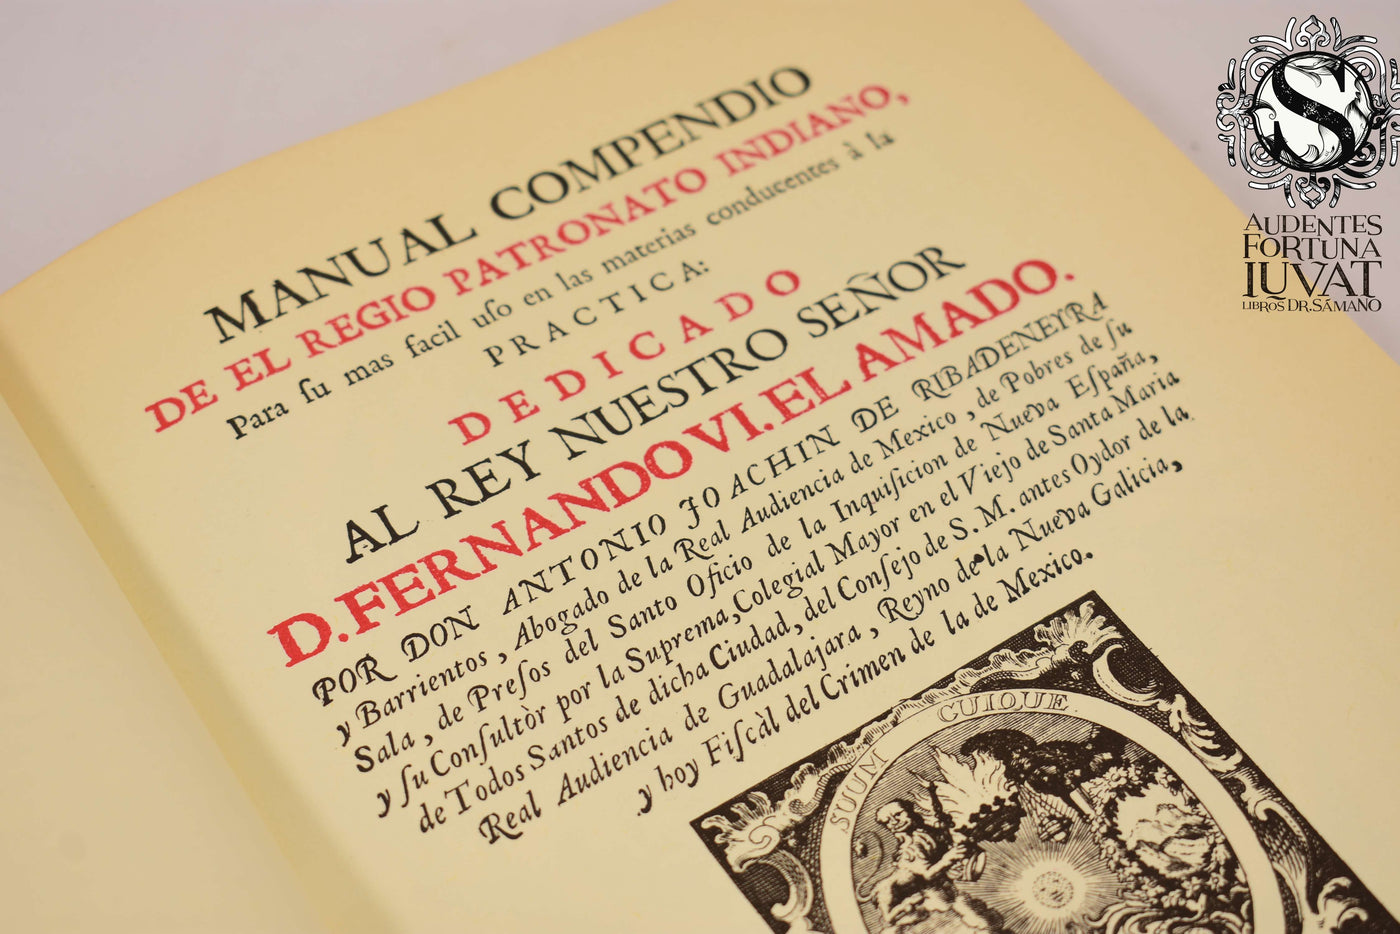 Manual Compendio de el Regio Patronato Indiano - DON ANTONIO FOACHINDE RIBADENEYRA